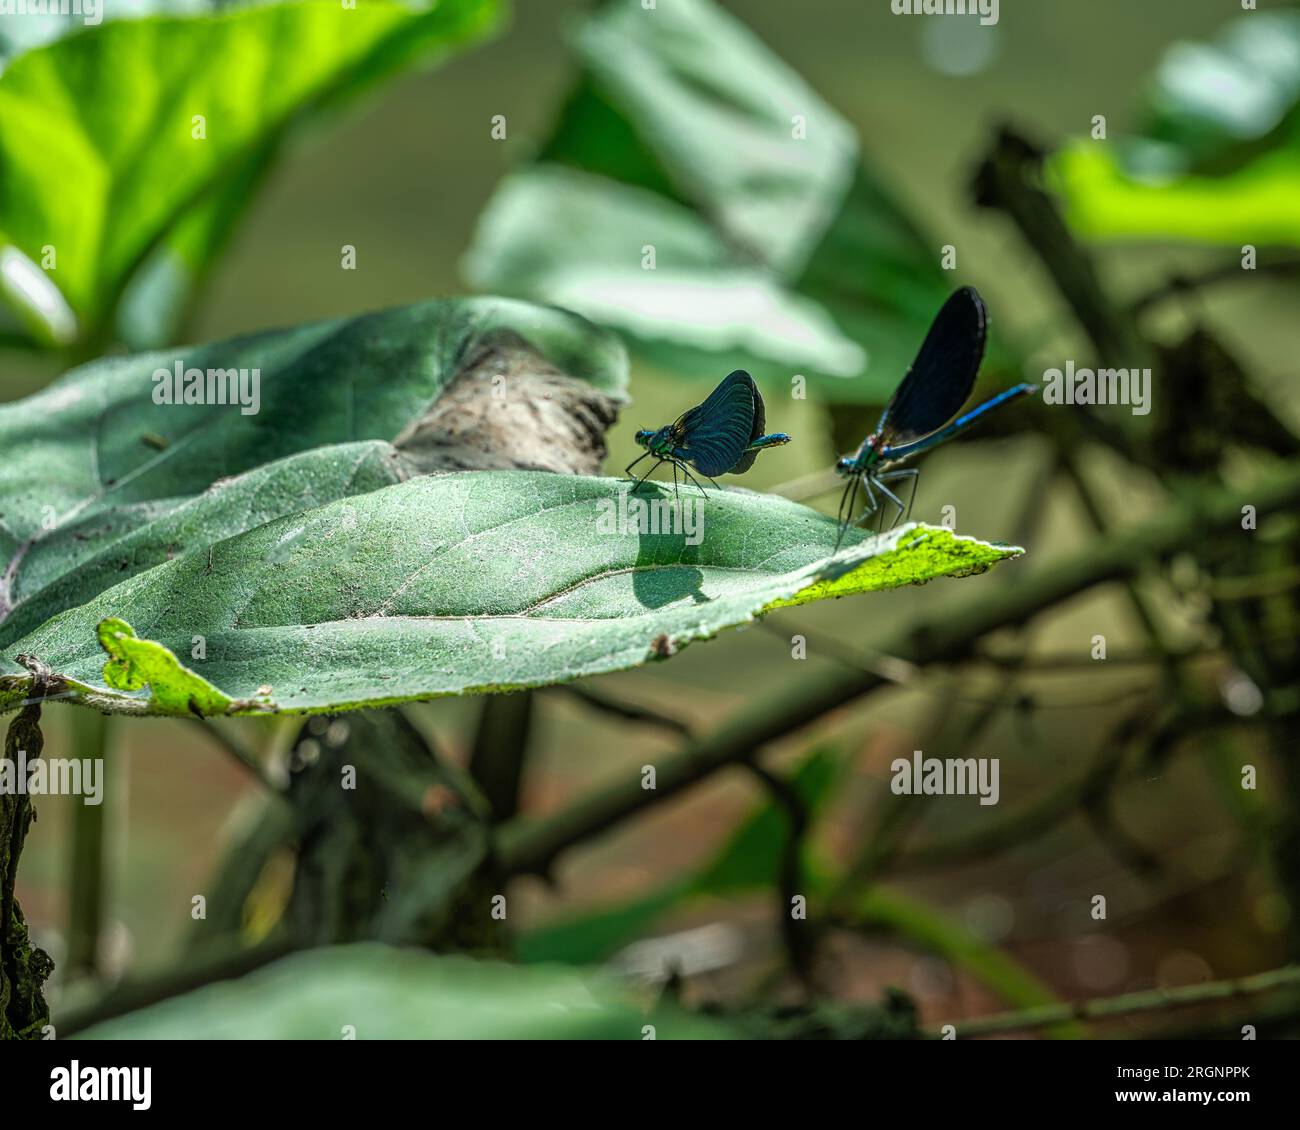 Spécimens de Calopteryx splendens, libellule resplendissante commune ou bleue, reposant sur une feuille au soleil. Abruzzes, Italie, Europe Banque D'Images